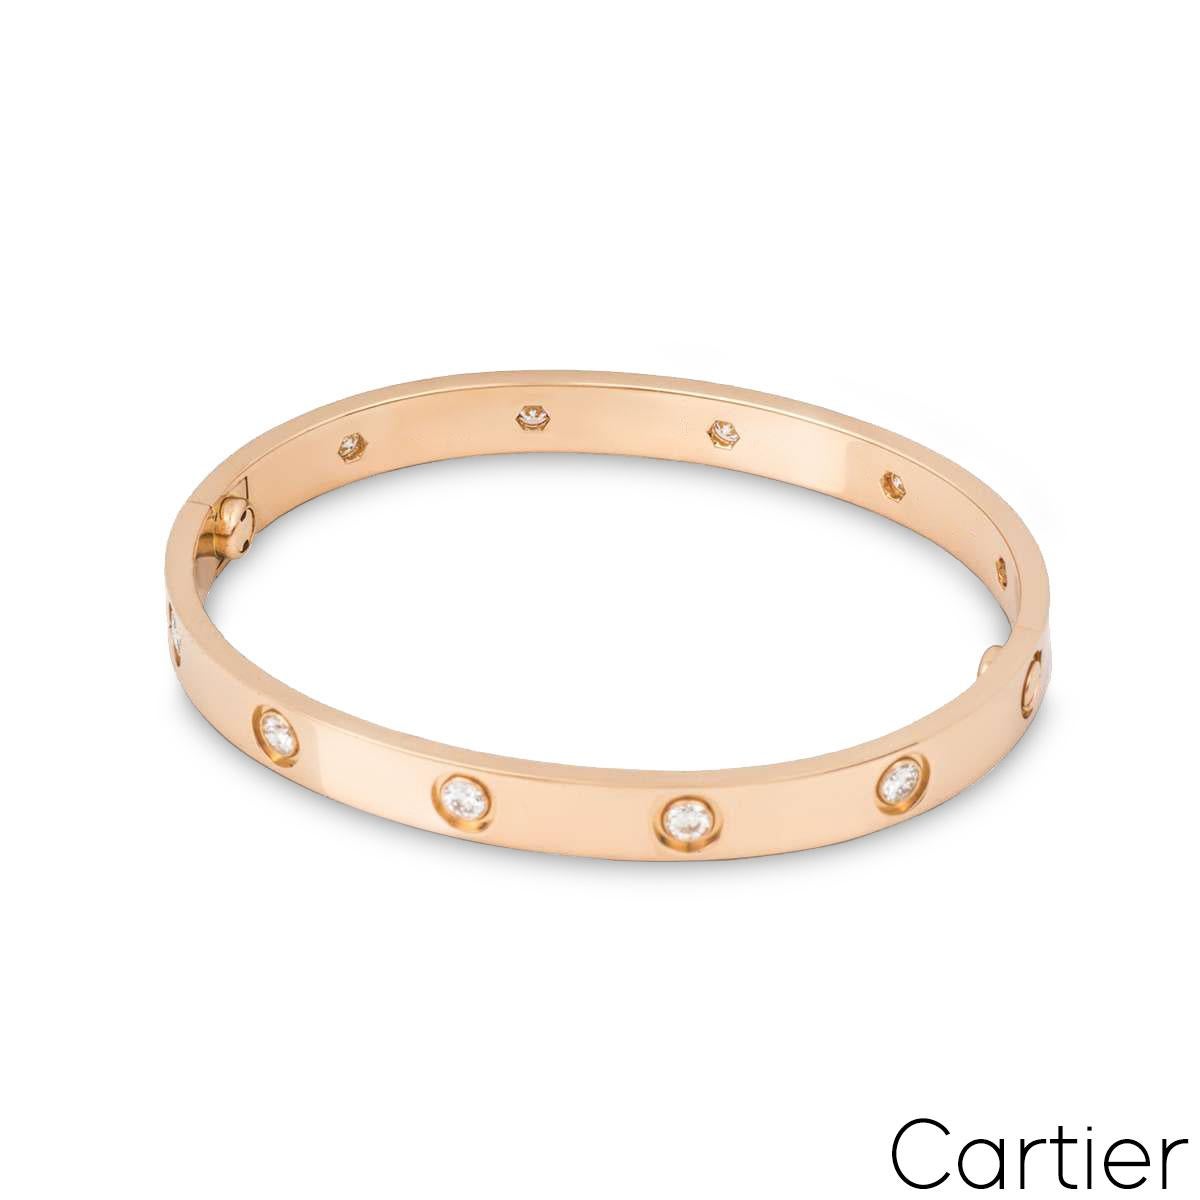 Un bracelet iconique Love en or rose 18 carats et plein de diamants de Cartier. Le bracelet est serti de 10 diamants ronds de taille brillant circulant sur le bord extérieur pour un total de 0,96ct. Le bracelet, de taille 19, est doté du nouveau